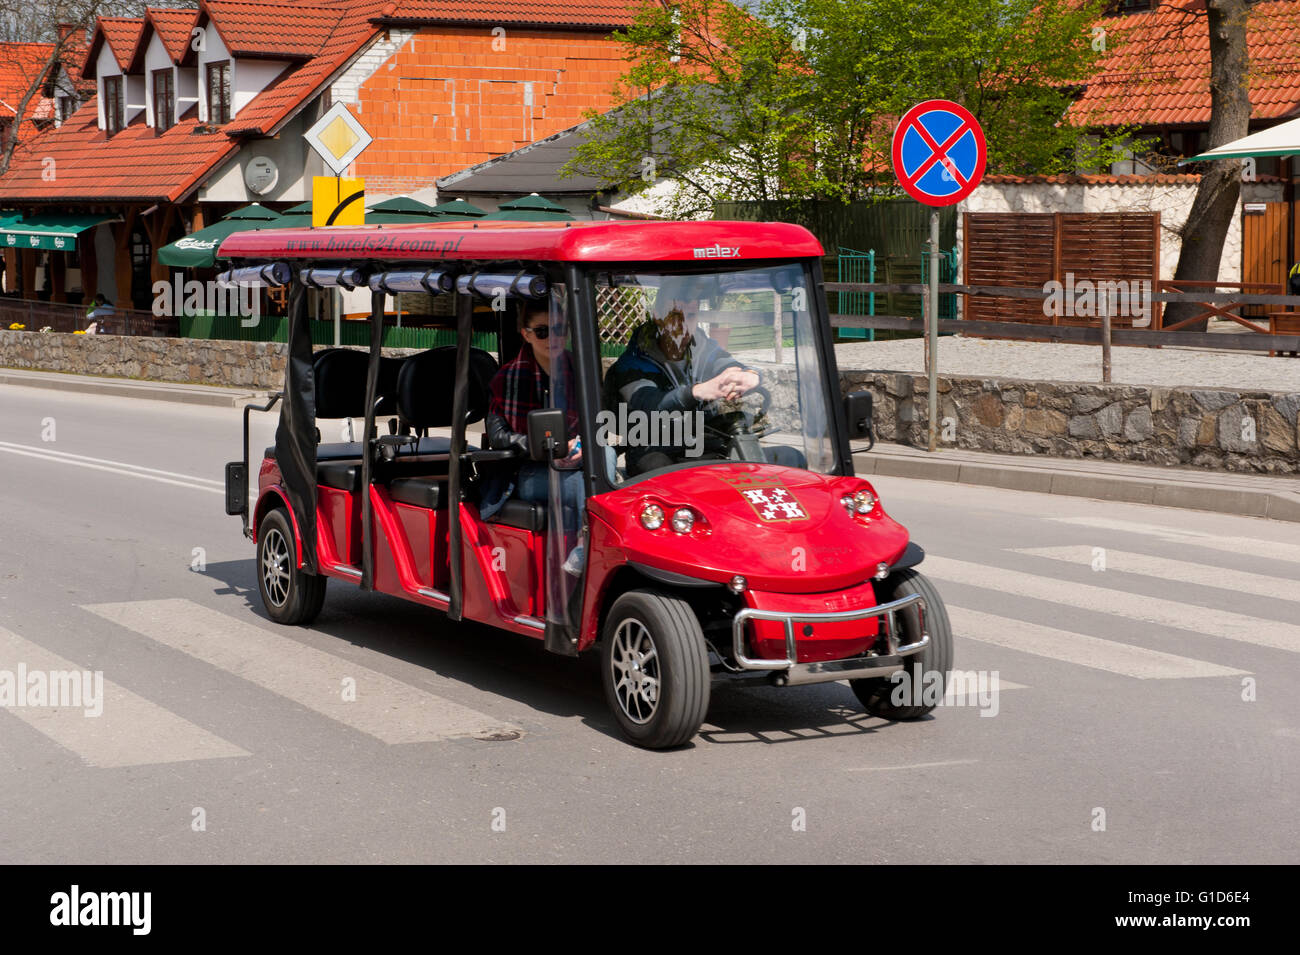 Escursione passeggero melex rosso in Kazimierz Dolny, Polonia, Europa, auto elettrica veicolo con passeggero tenuto un breve viaggio. Foto Stock